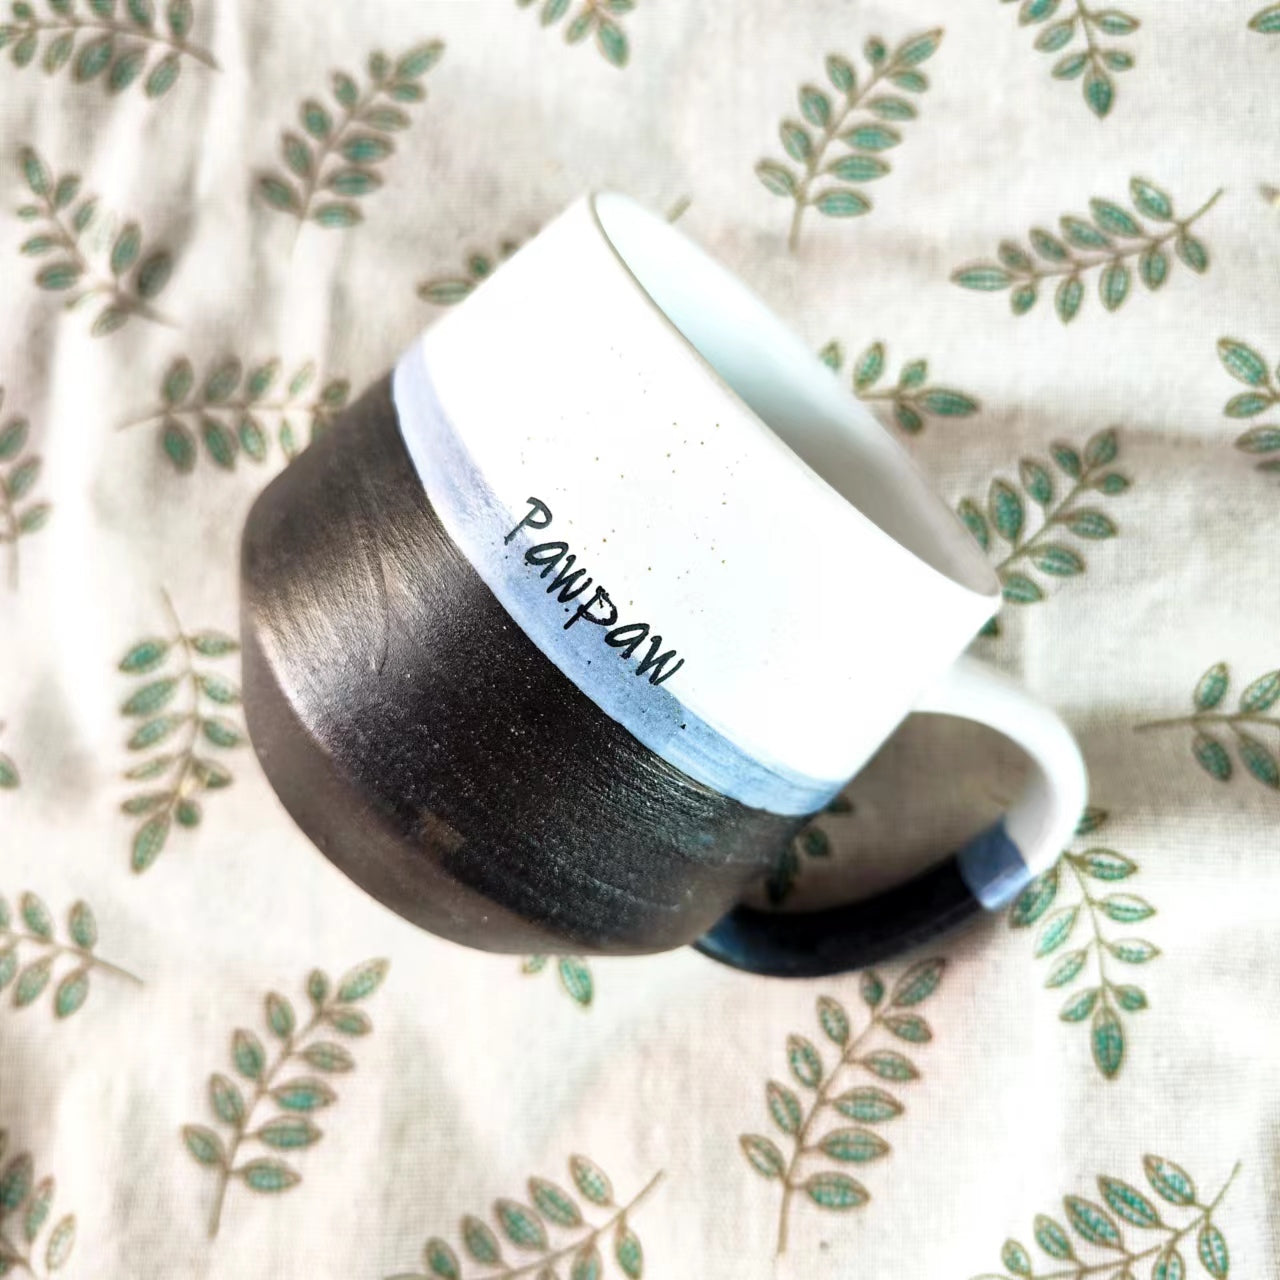 Custom Name/Logo Coffee Mug, 16 Fluid Ounces Retro Handmade Ceramic Mugs